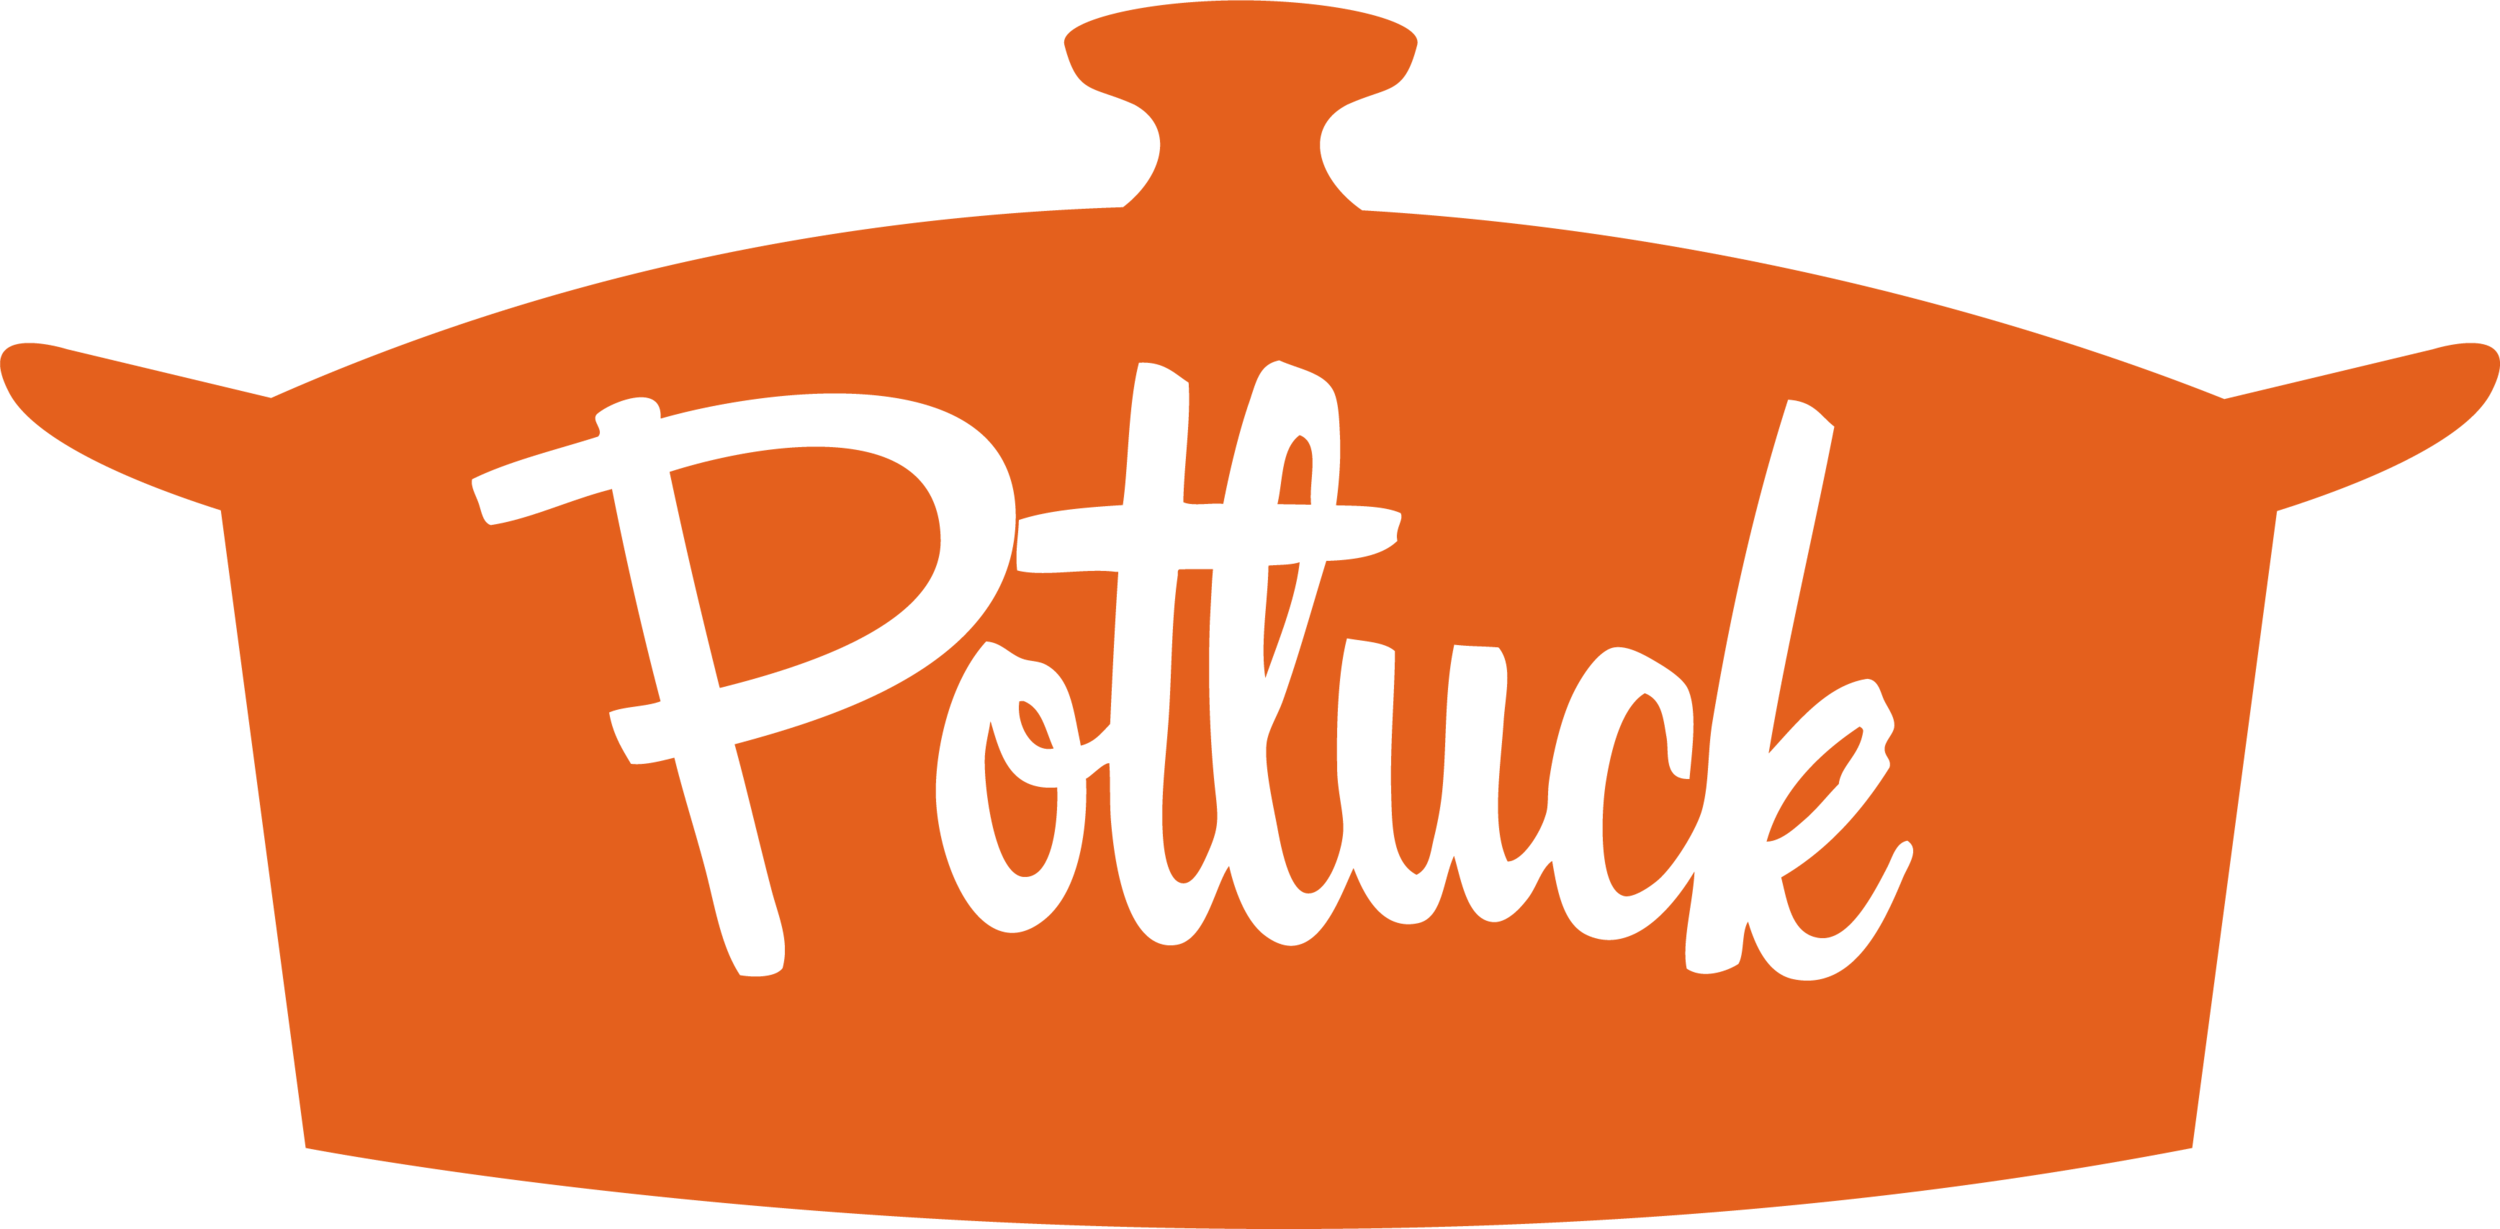 Potluck - Thanksgiving Theme